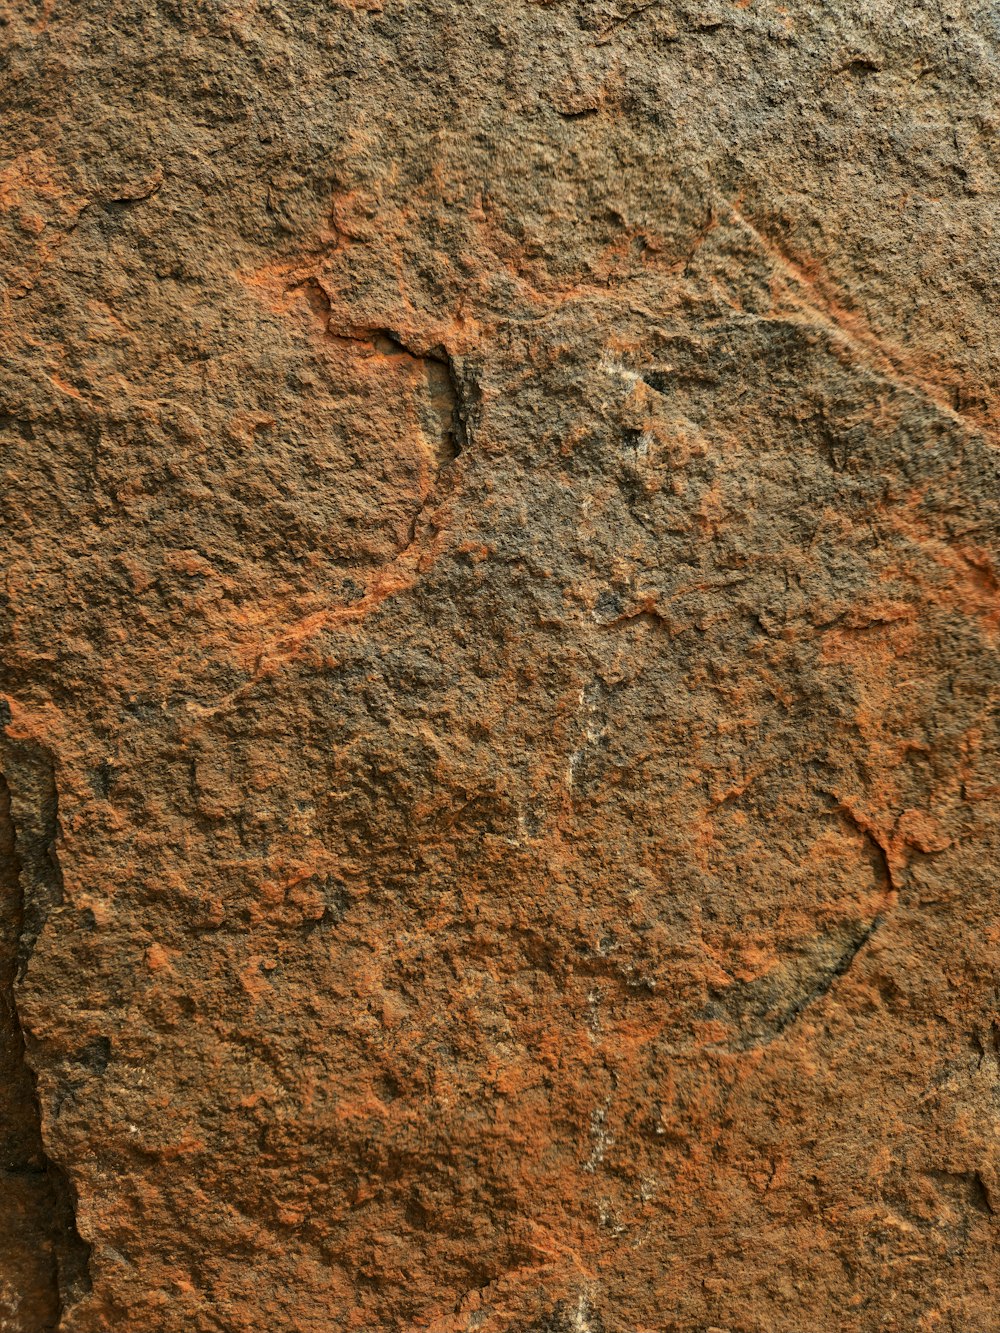 Un primer plano de una roca con una pequeña cantidad de tierra